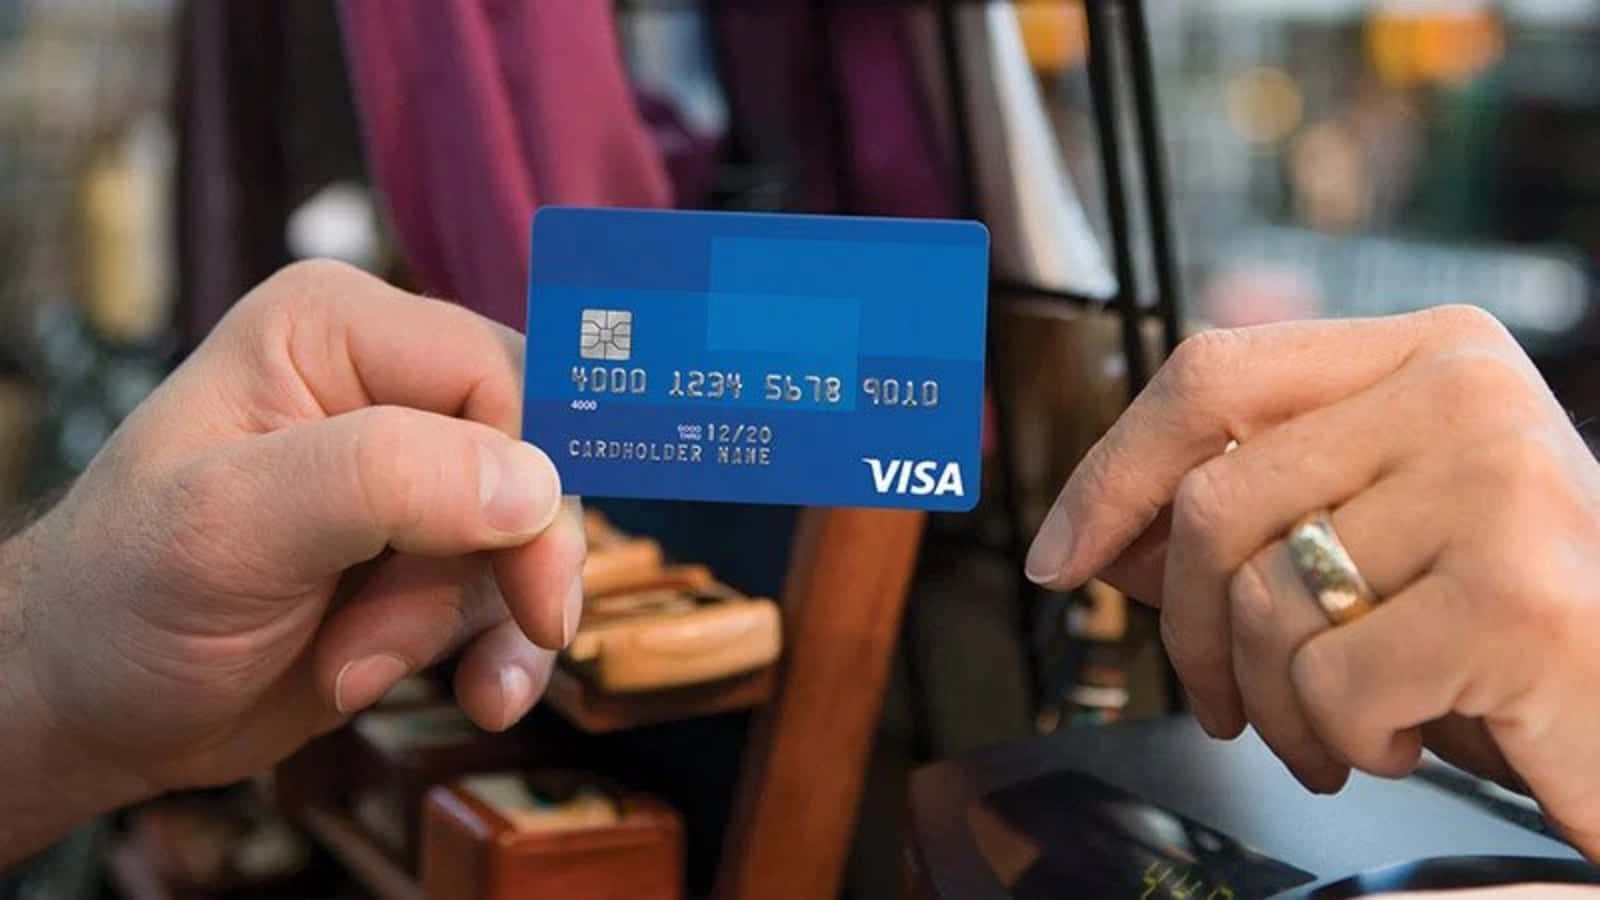 Enperson Der Holder Et Visa Kreditkort.